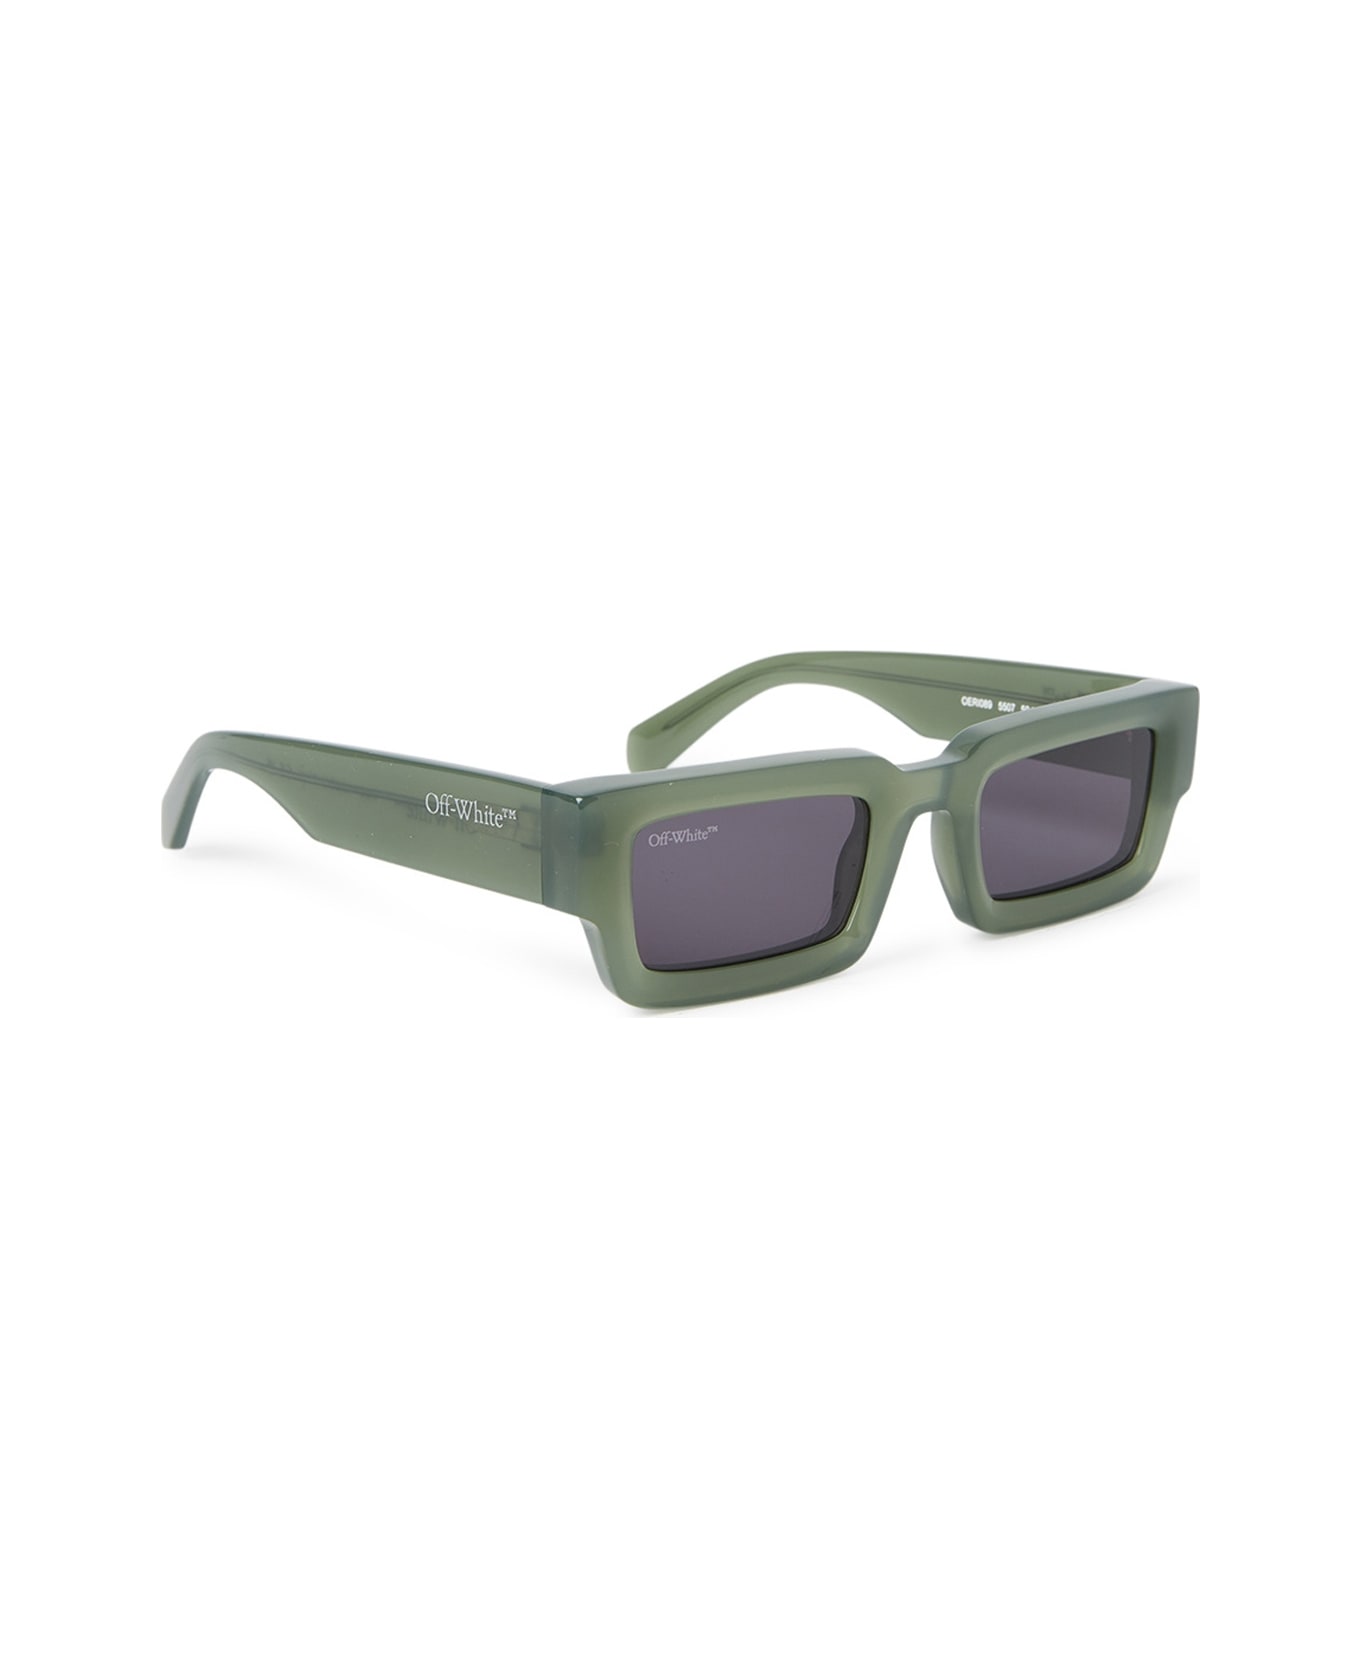 Off-White Lecce Sunglasses - Verde サングラス